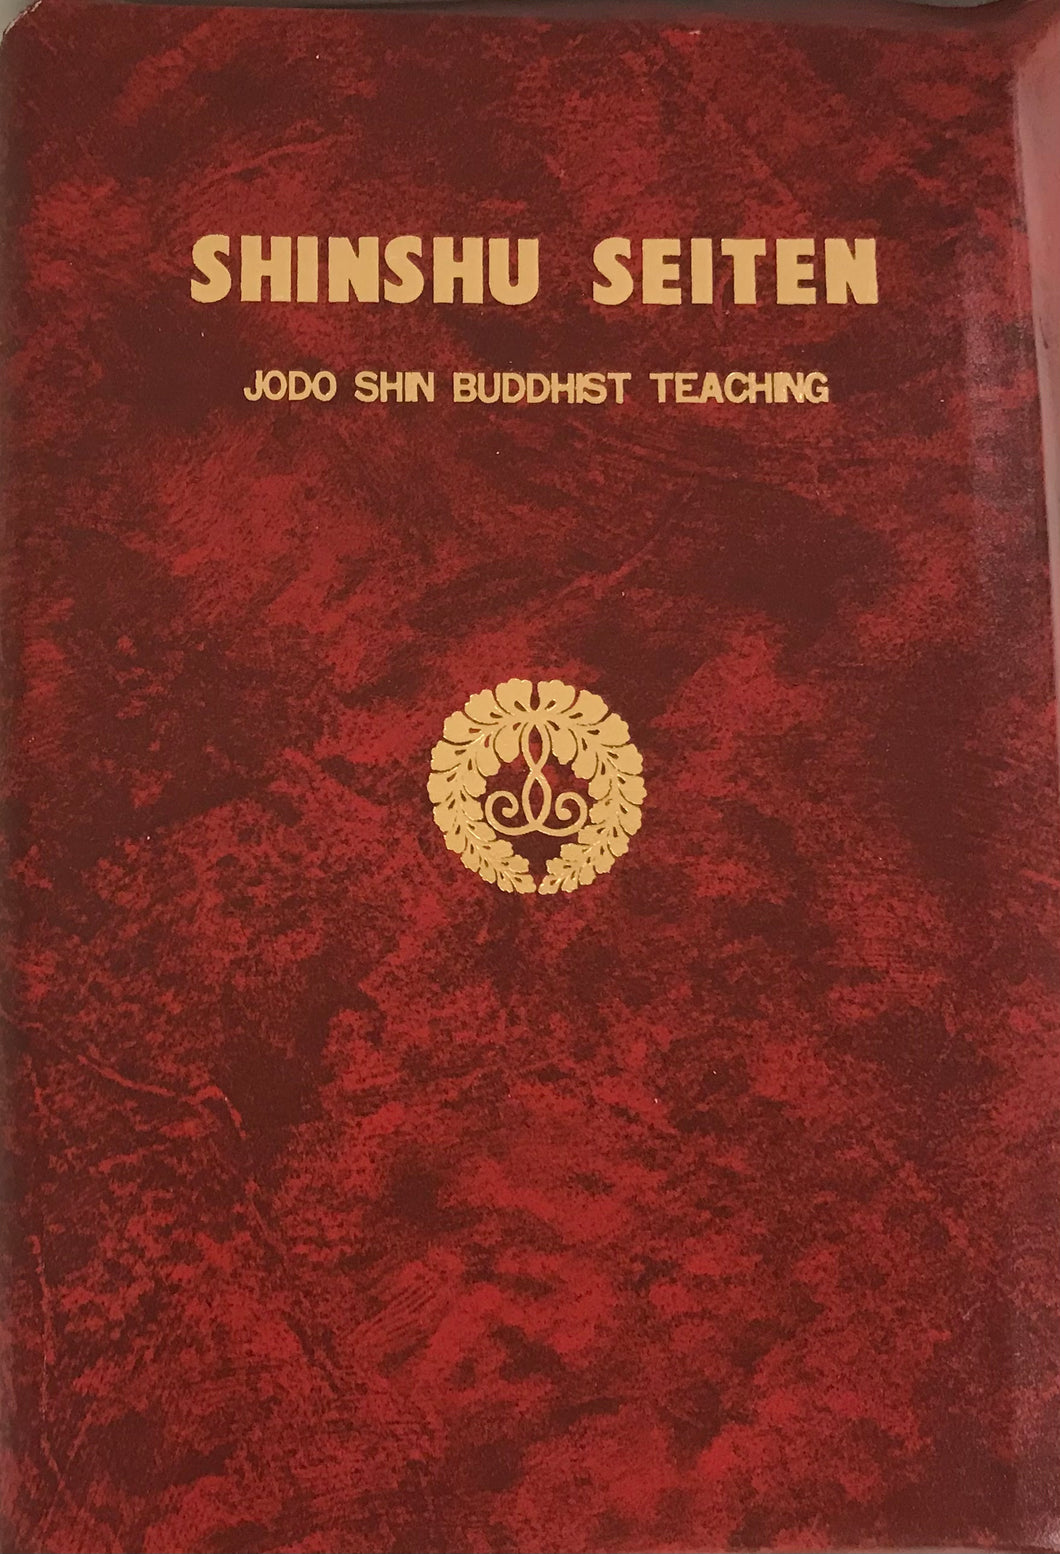 Shinshu Seiten, Jodo Shin Buddhist Teaching